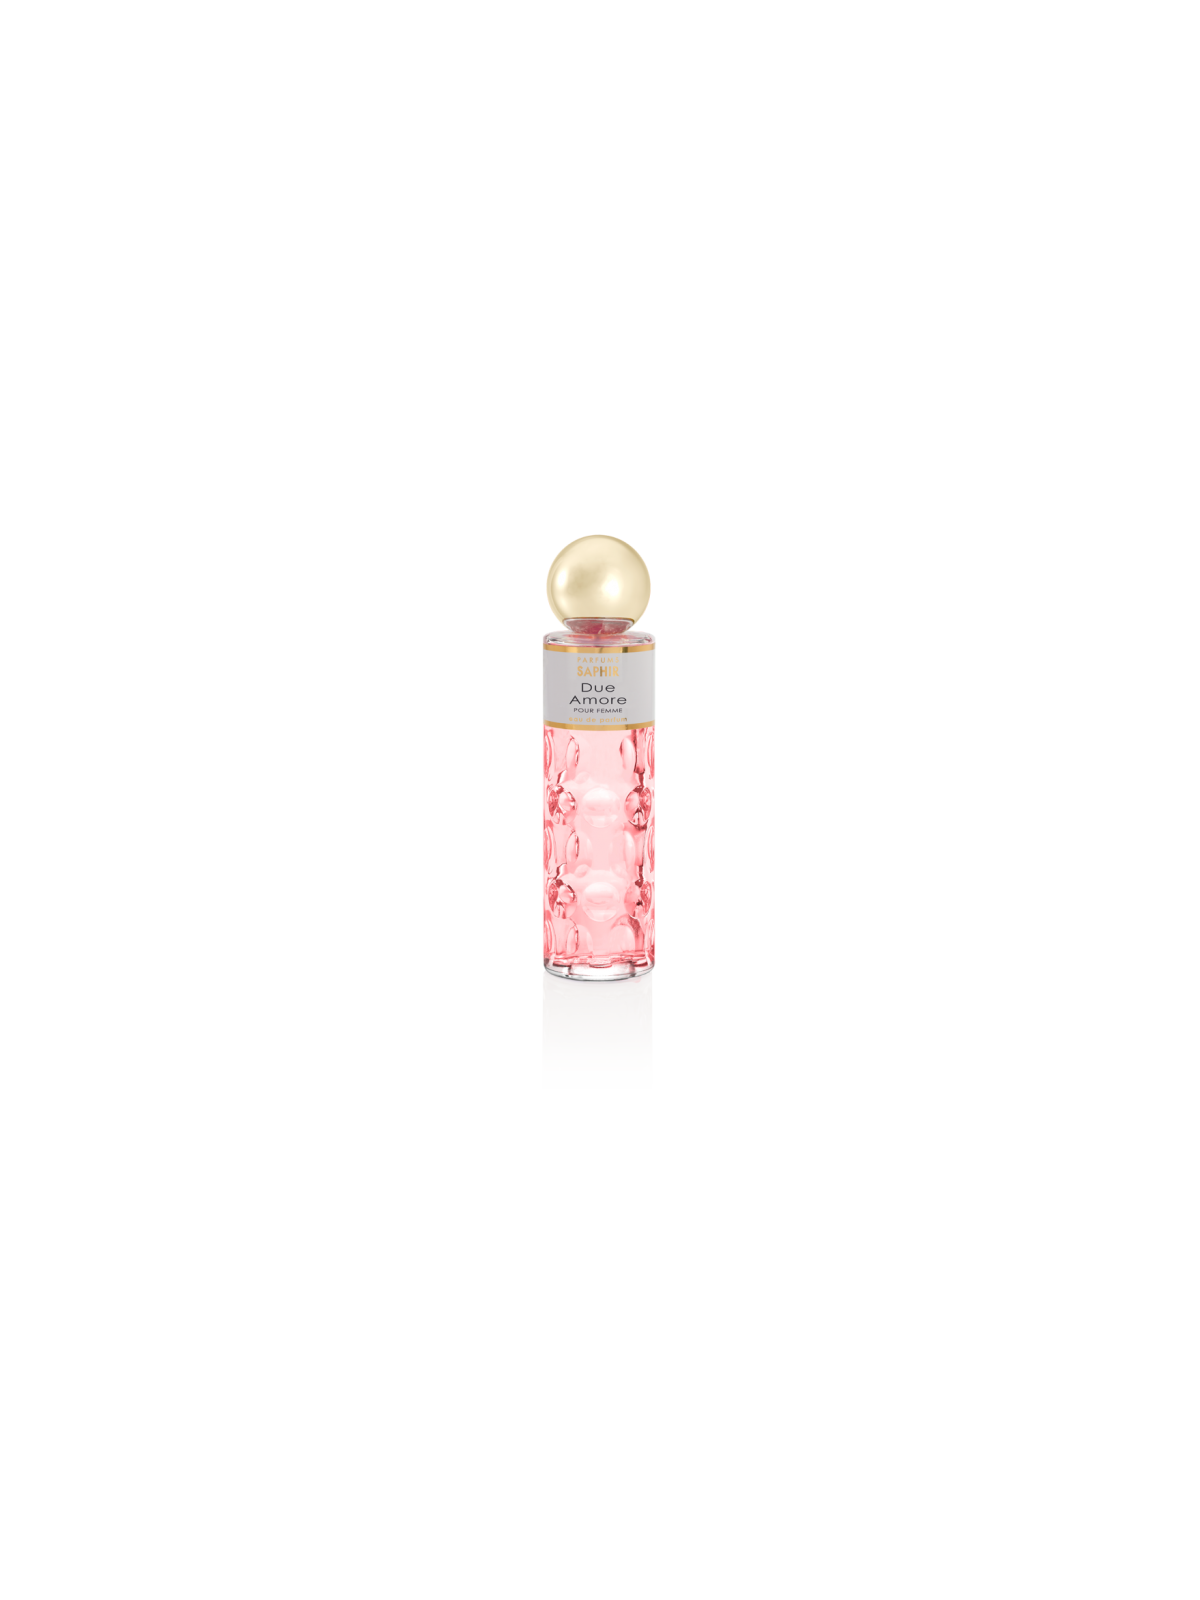 Comprar Perfume Saphir Due Amore 200ml. en Perfumes para mujer por sólo 13,90 € o un precio específico de 13,90 € en Thalie Care